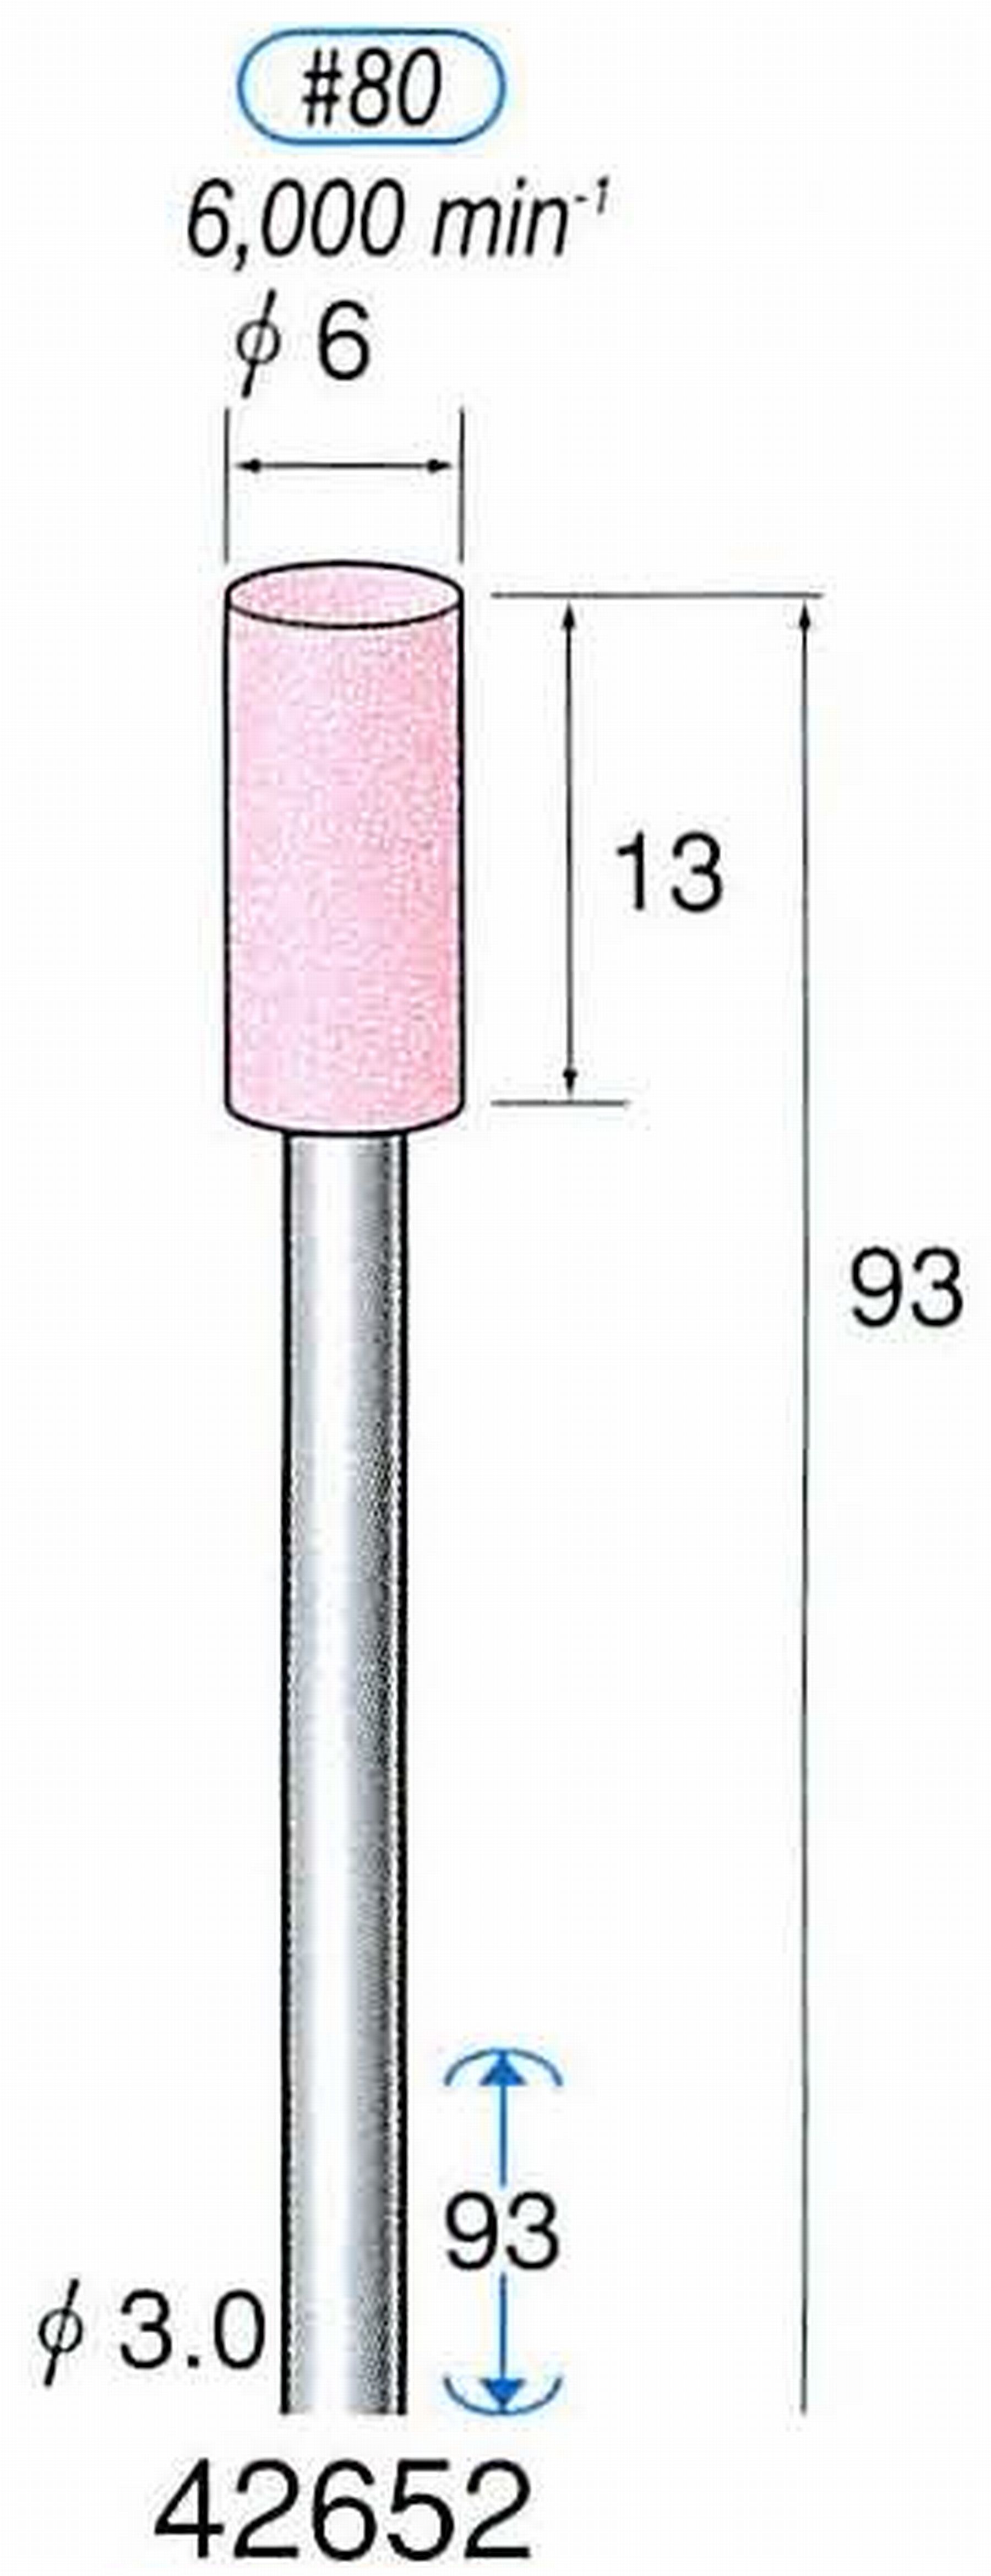 ナカニシ/NAKANISHI 軸付砥石(WA砥粒) 一般研削用(ロングシャフト80mmタイプ) 軸径(シャンク) φ3.0mm 42652